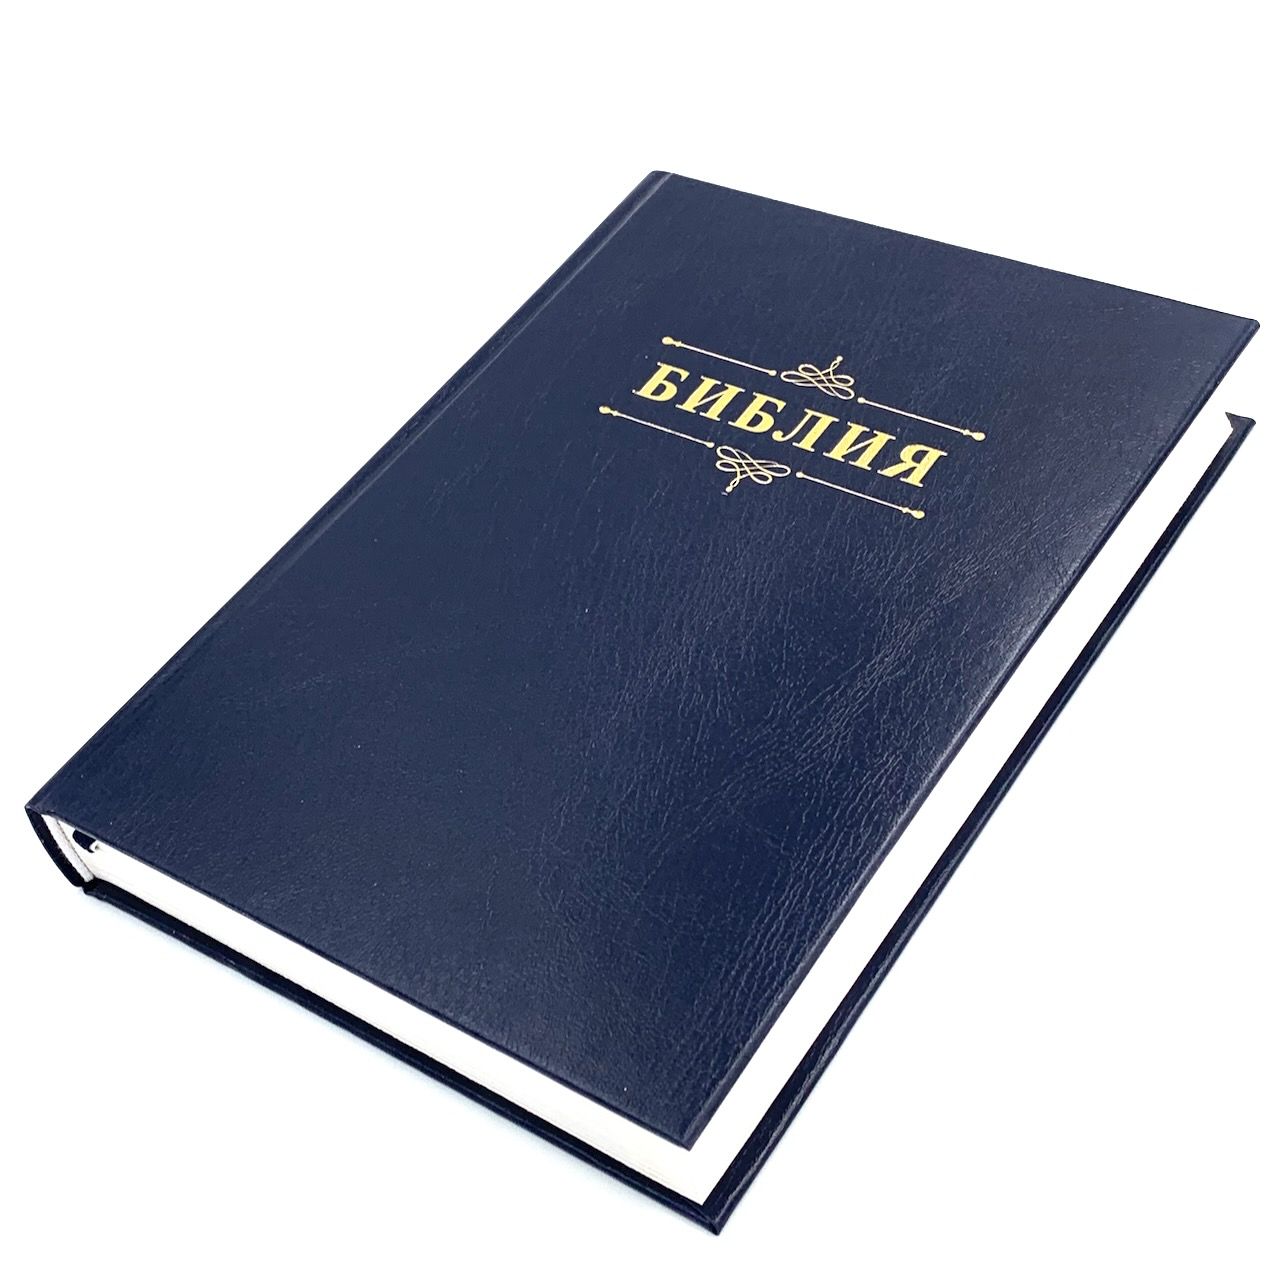 Библия 076 код 23076-3,  надпись "Библия" твердый переплет,  цвет темно-синий, размер 170x240 мм